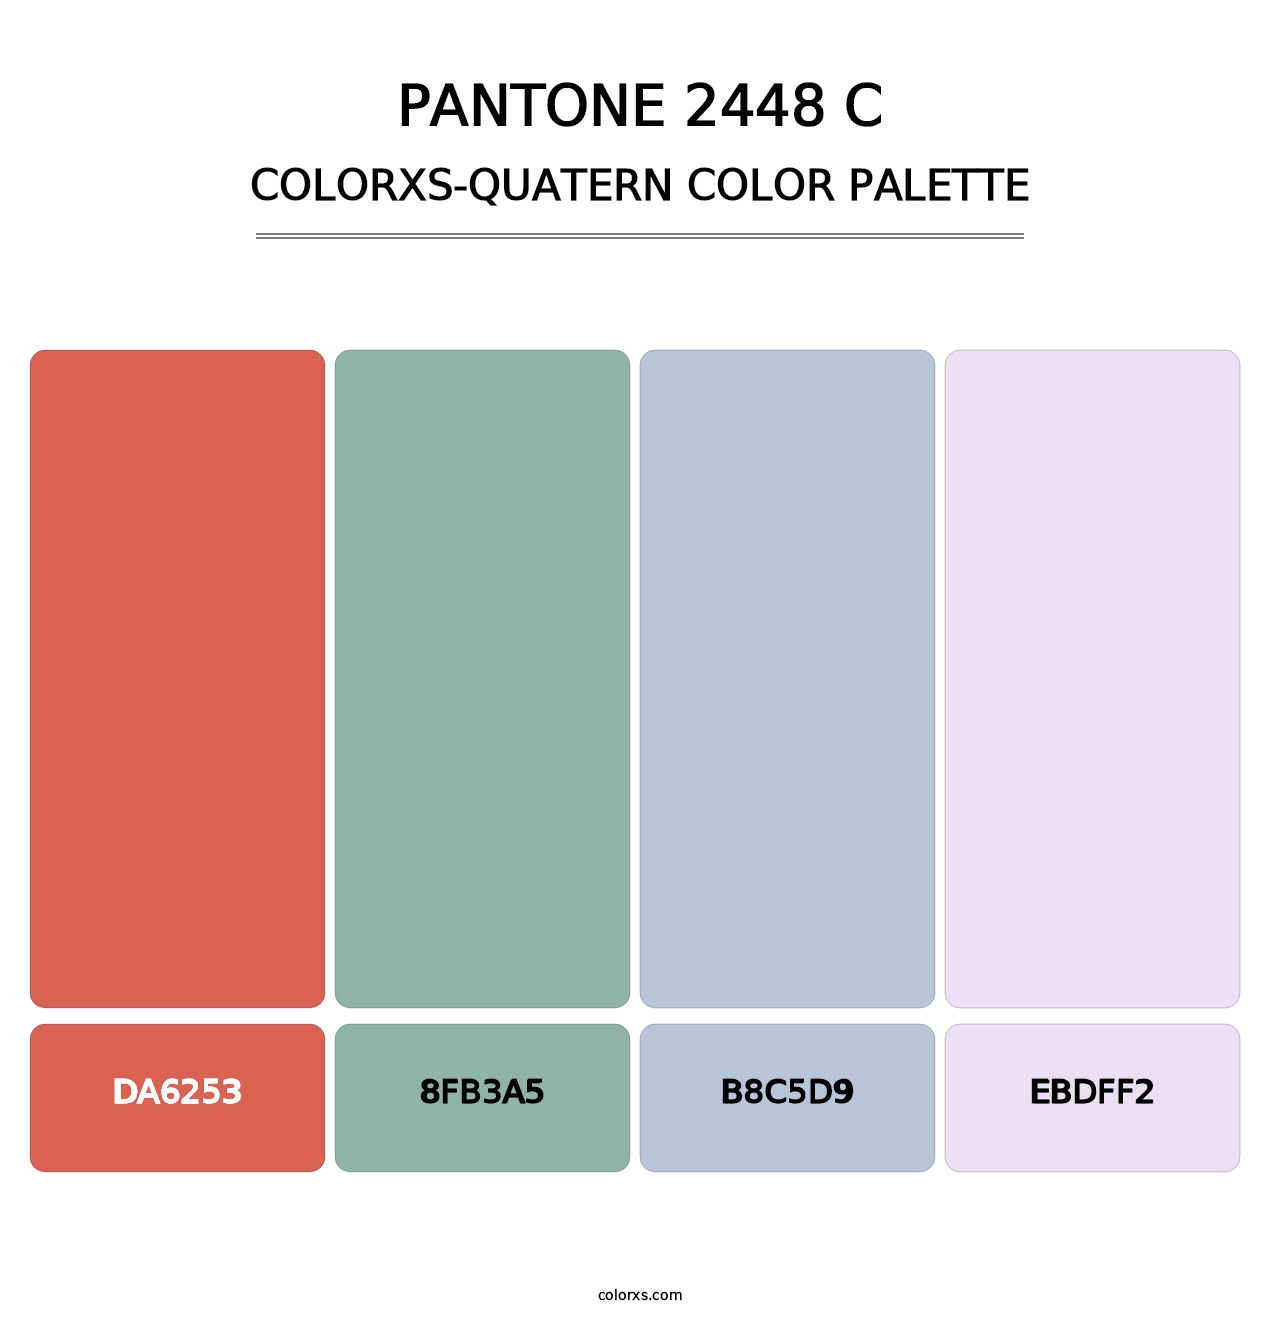 PANTONE 2448 C - Colorxs Quatern Palette